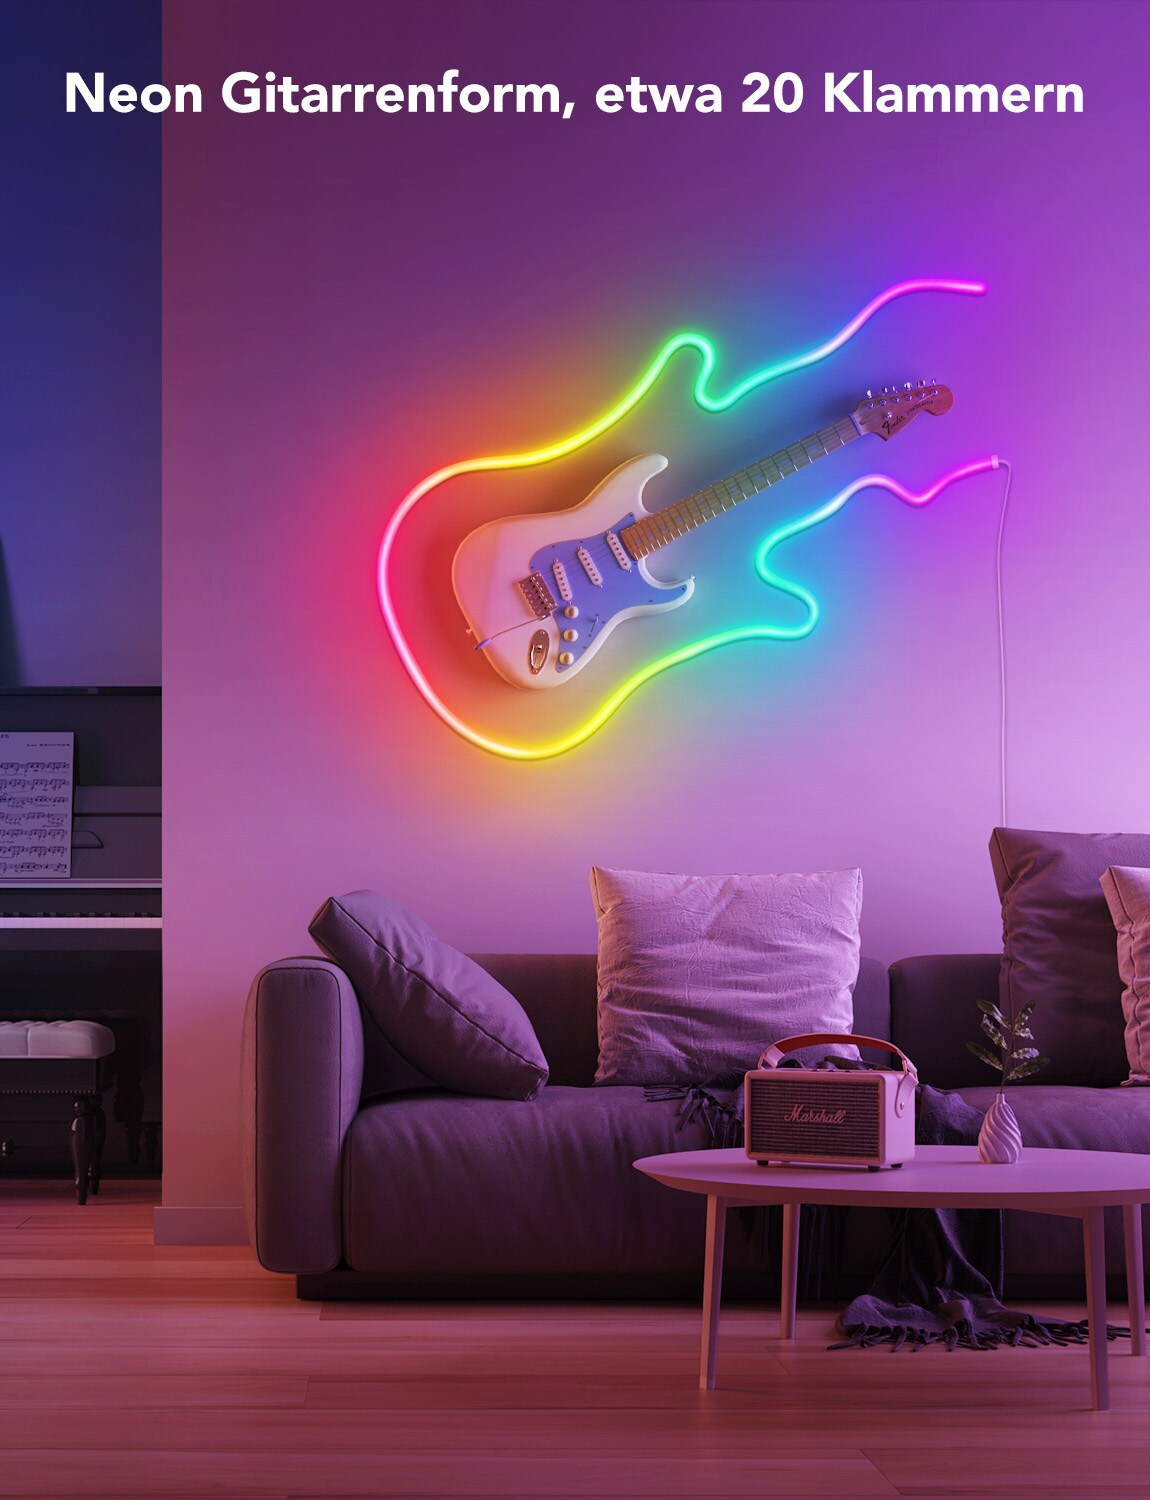 Govee 20 Klammern für Neon LED Lichtstreifen ++ Cyberport